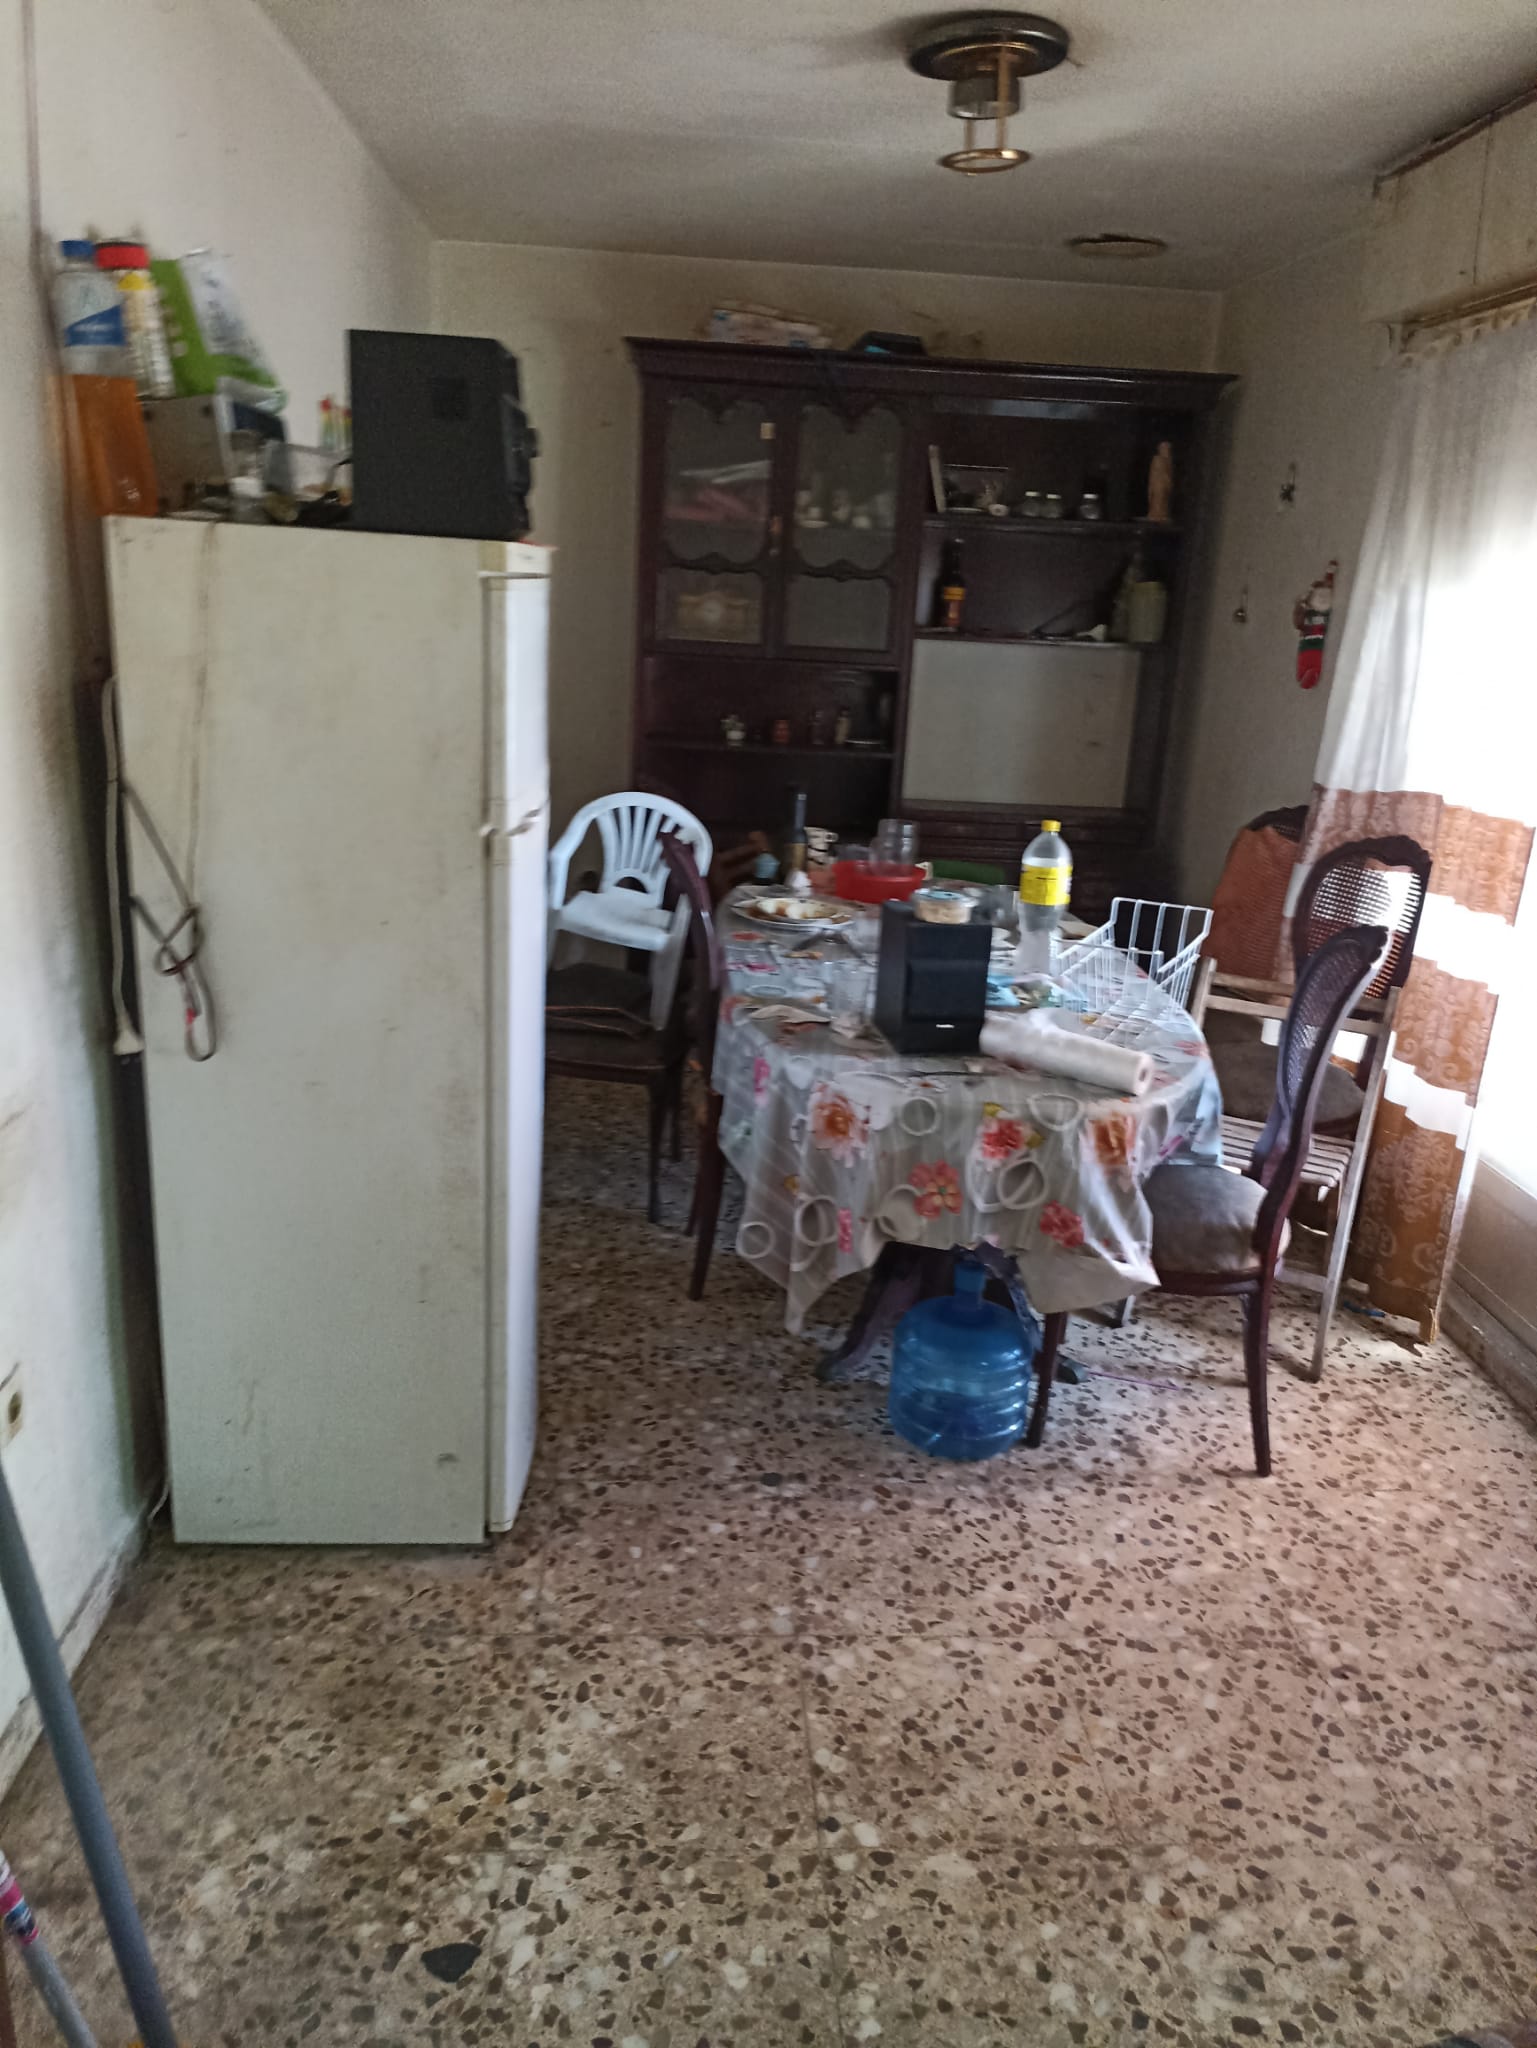 Vaciado de muebles y limpieza de pisos en Llorenç del Penedès - ¡Resultados impecables!